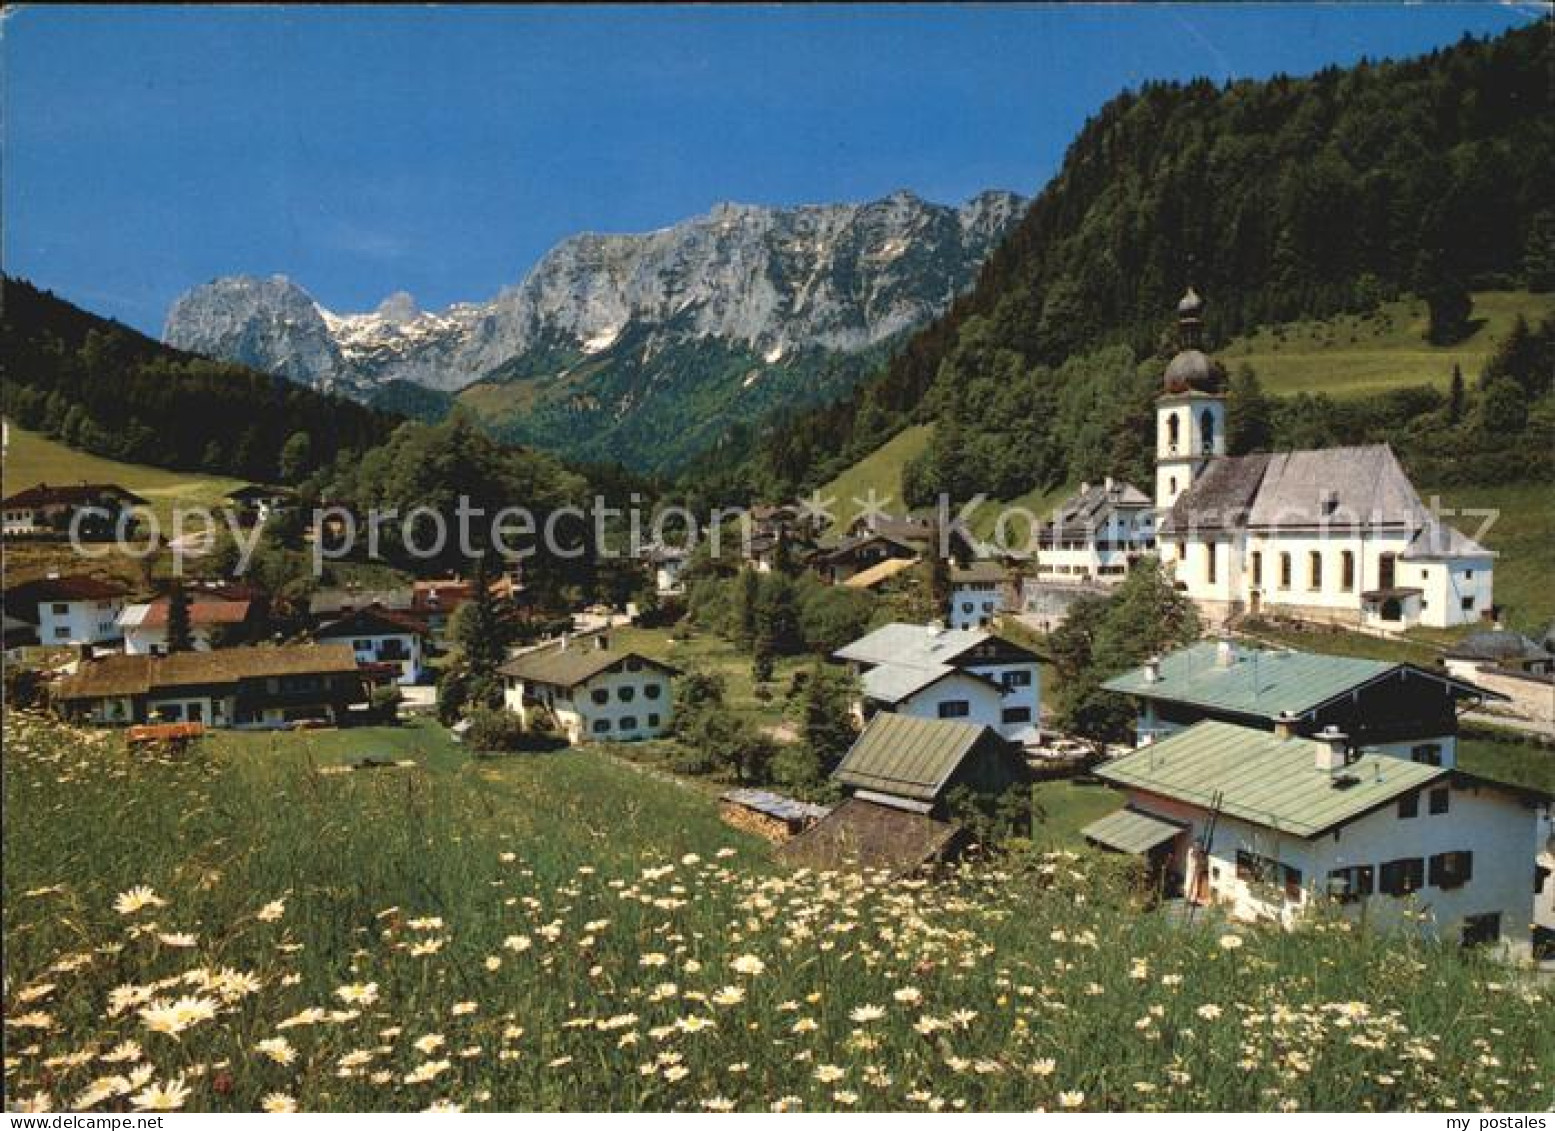 72568211 Ramsau Berchtesgaden  Ramsau B.Berchtesgaden - Berchtesgaden